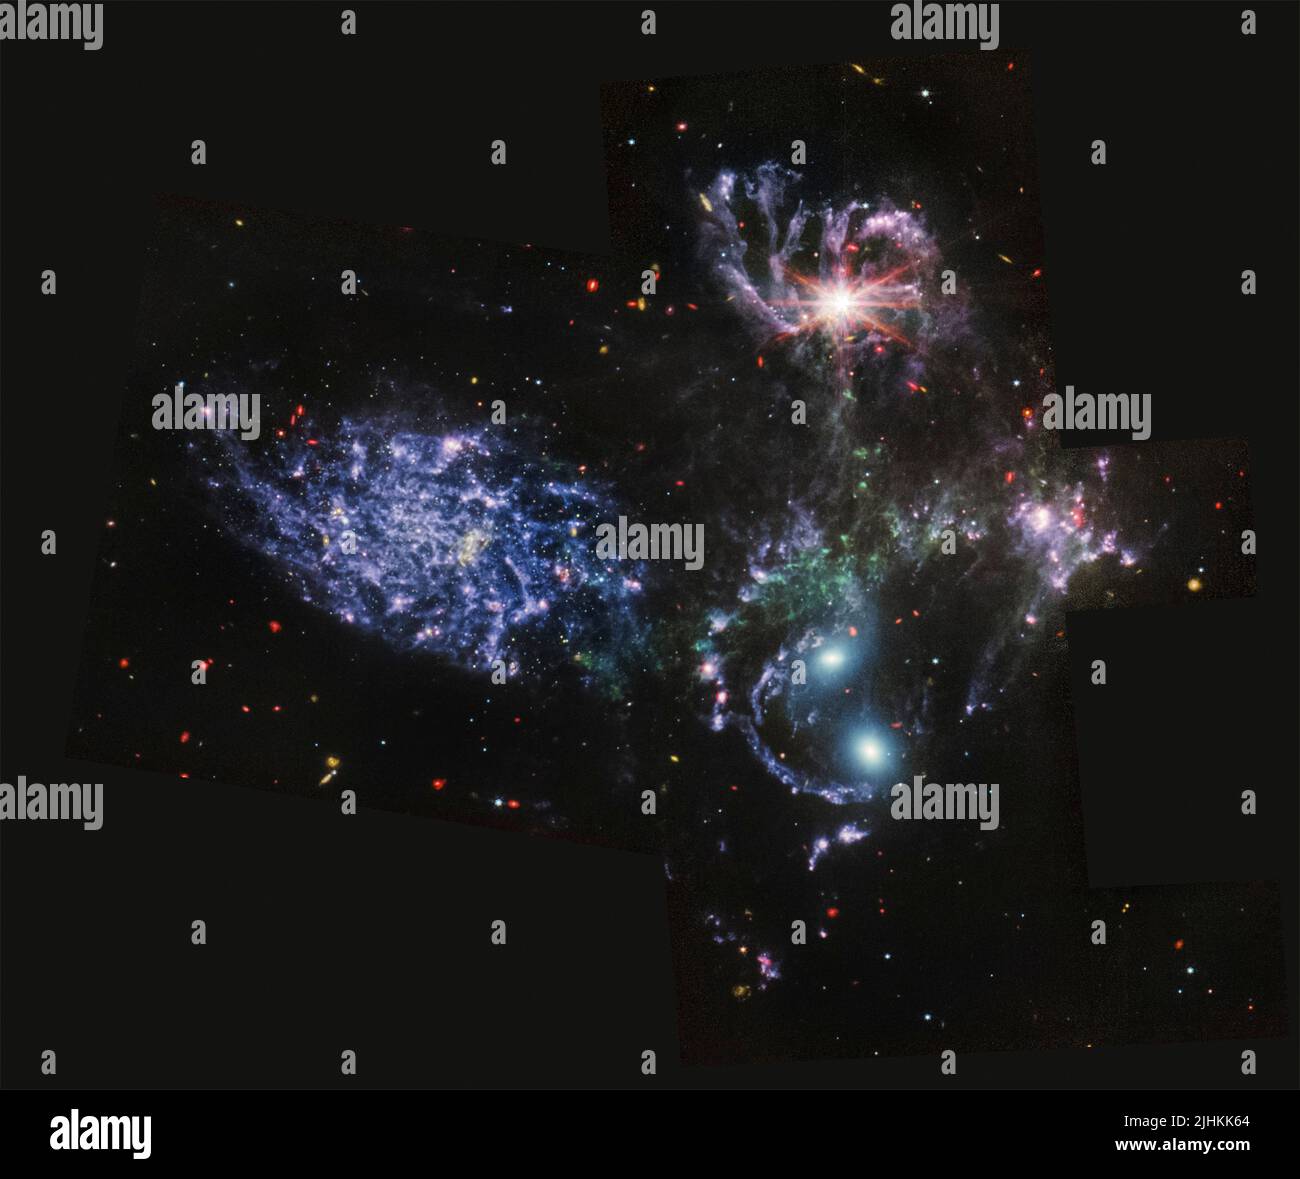 Die visuelle Gruppe von fünf Galaxien, die als Stephans Quintet bekannt sind, aufgenommen vom NASA Webb Telescope, zeigt funkelnde Haufen von Millionen junger Sterne und Starburst-Regionen, in denen frischer Stern geboren wird, veröffentlicht vom Goddard Space Flight Center, 12. Juli 2022 in Greenbelt, Maryland. Stockfoto